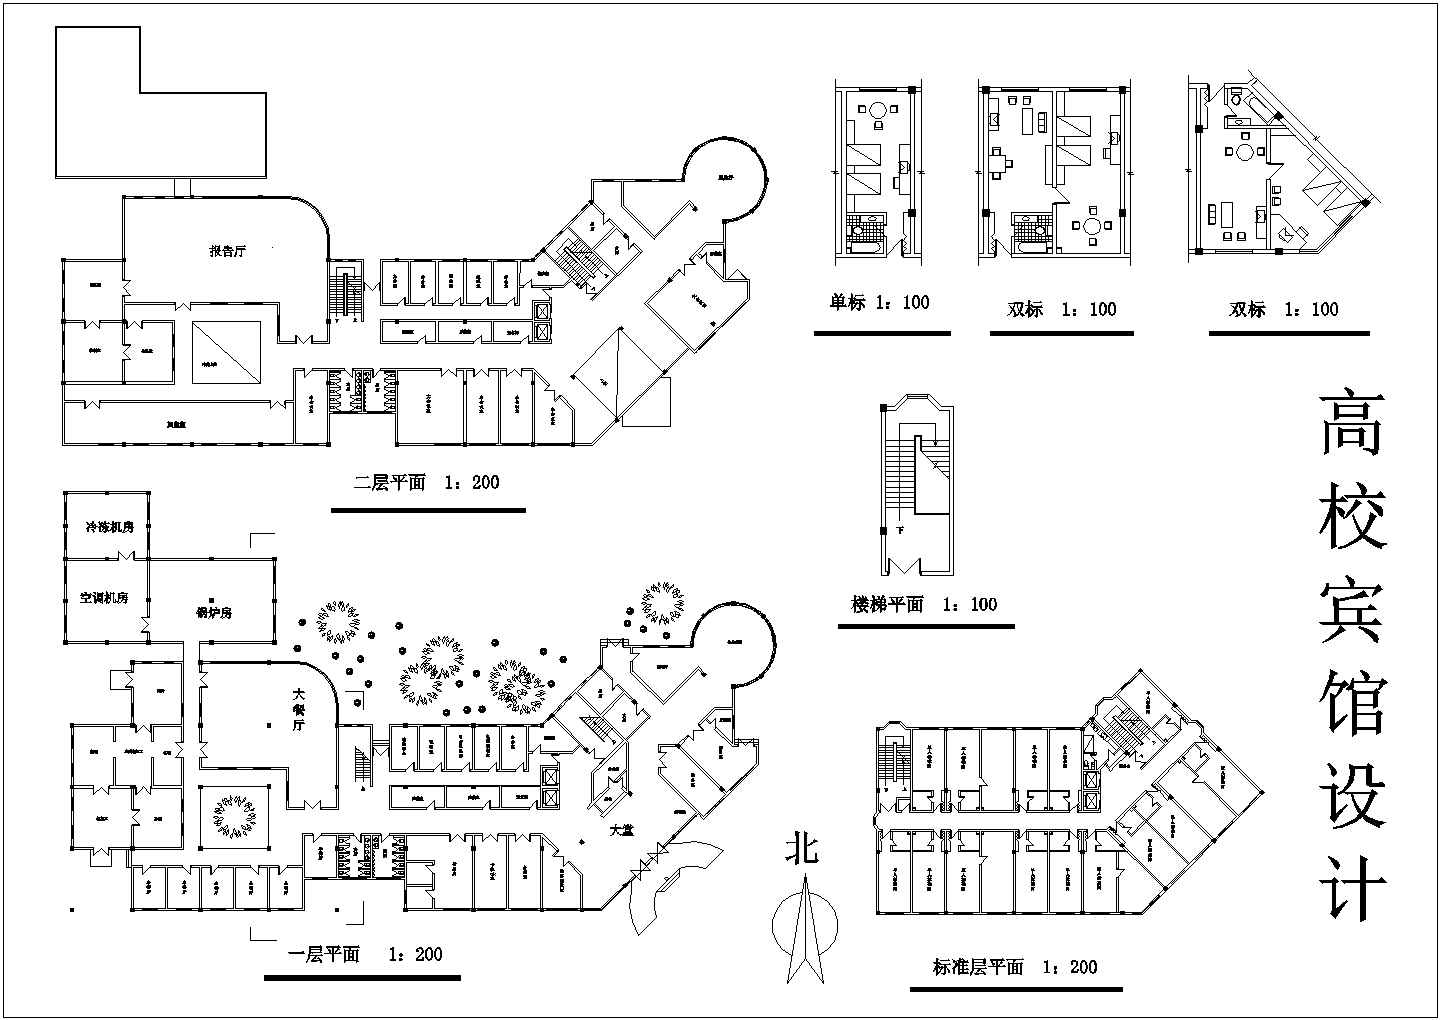 高校旅馆全套建筑设计施工图